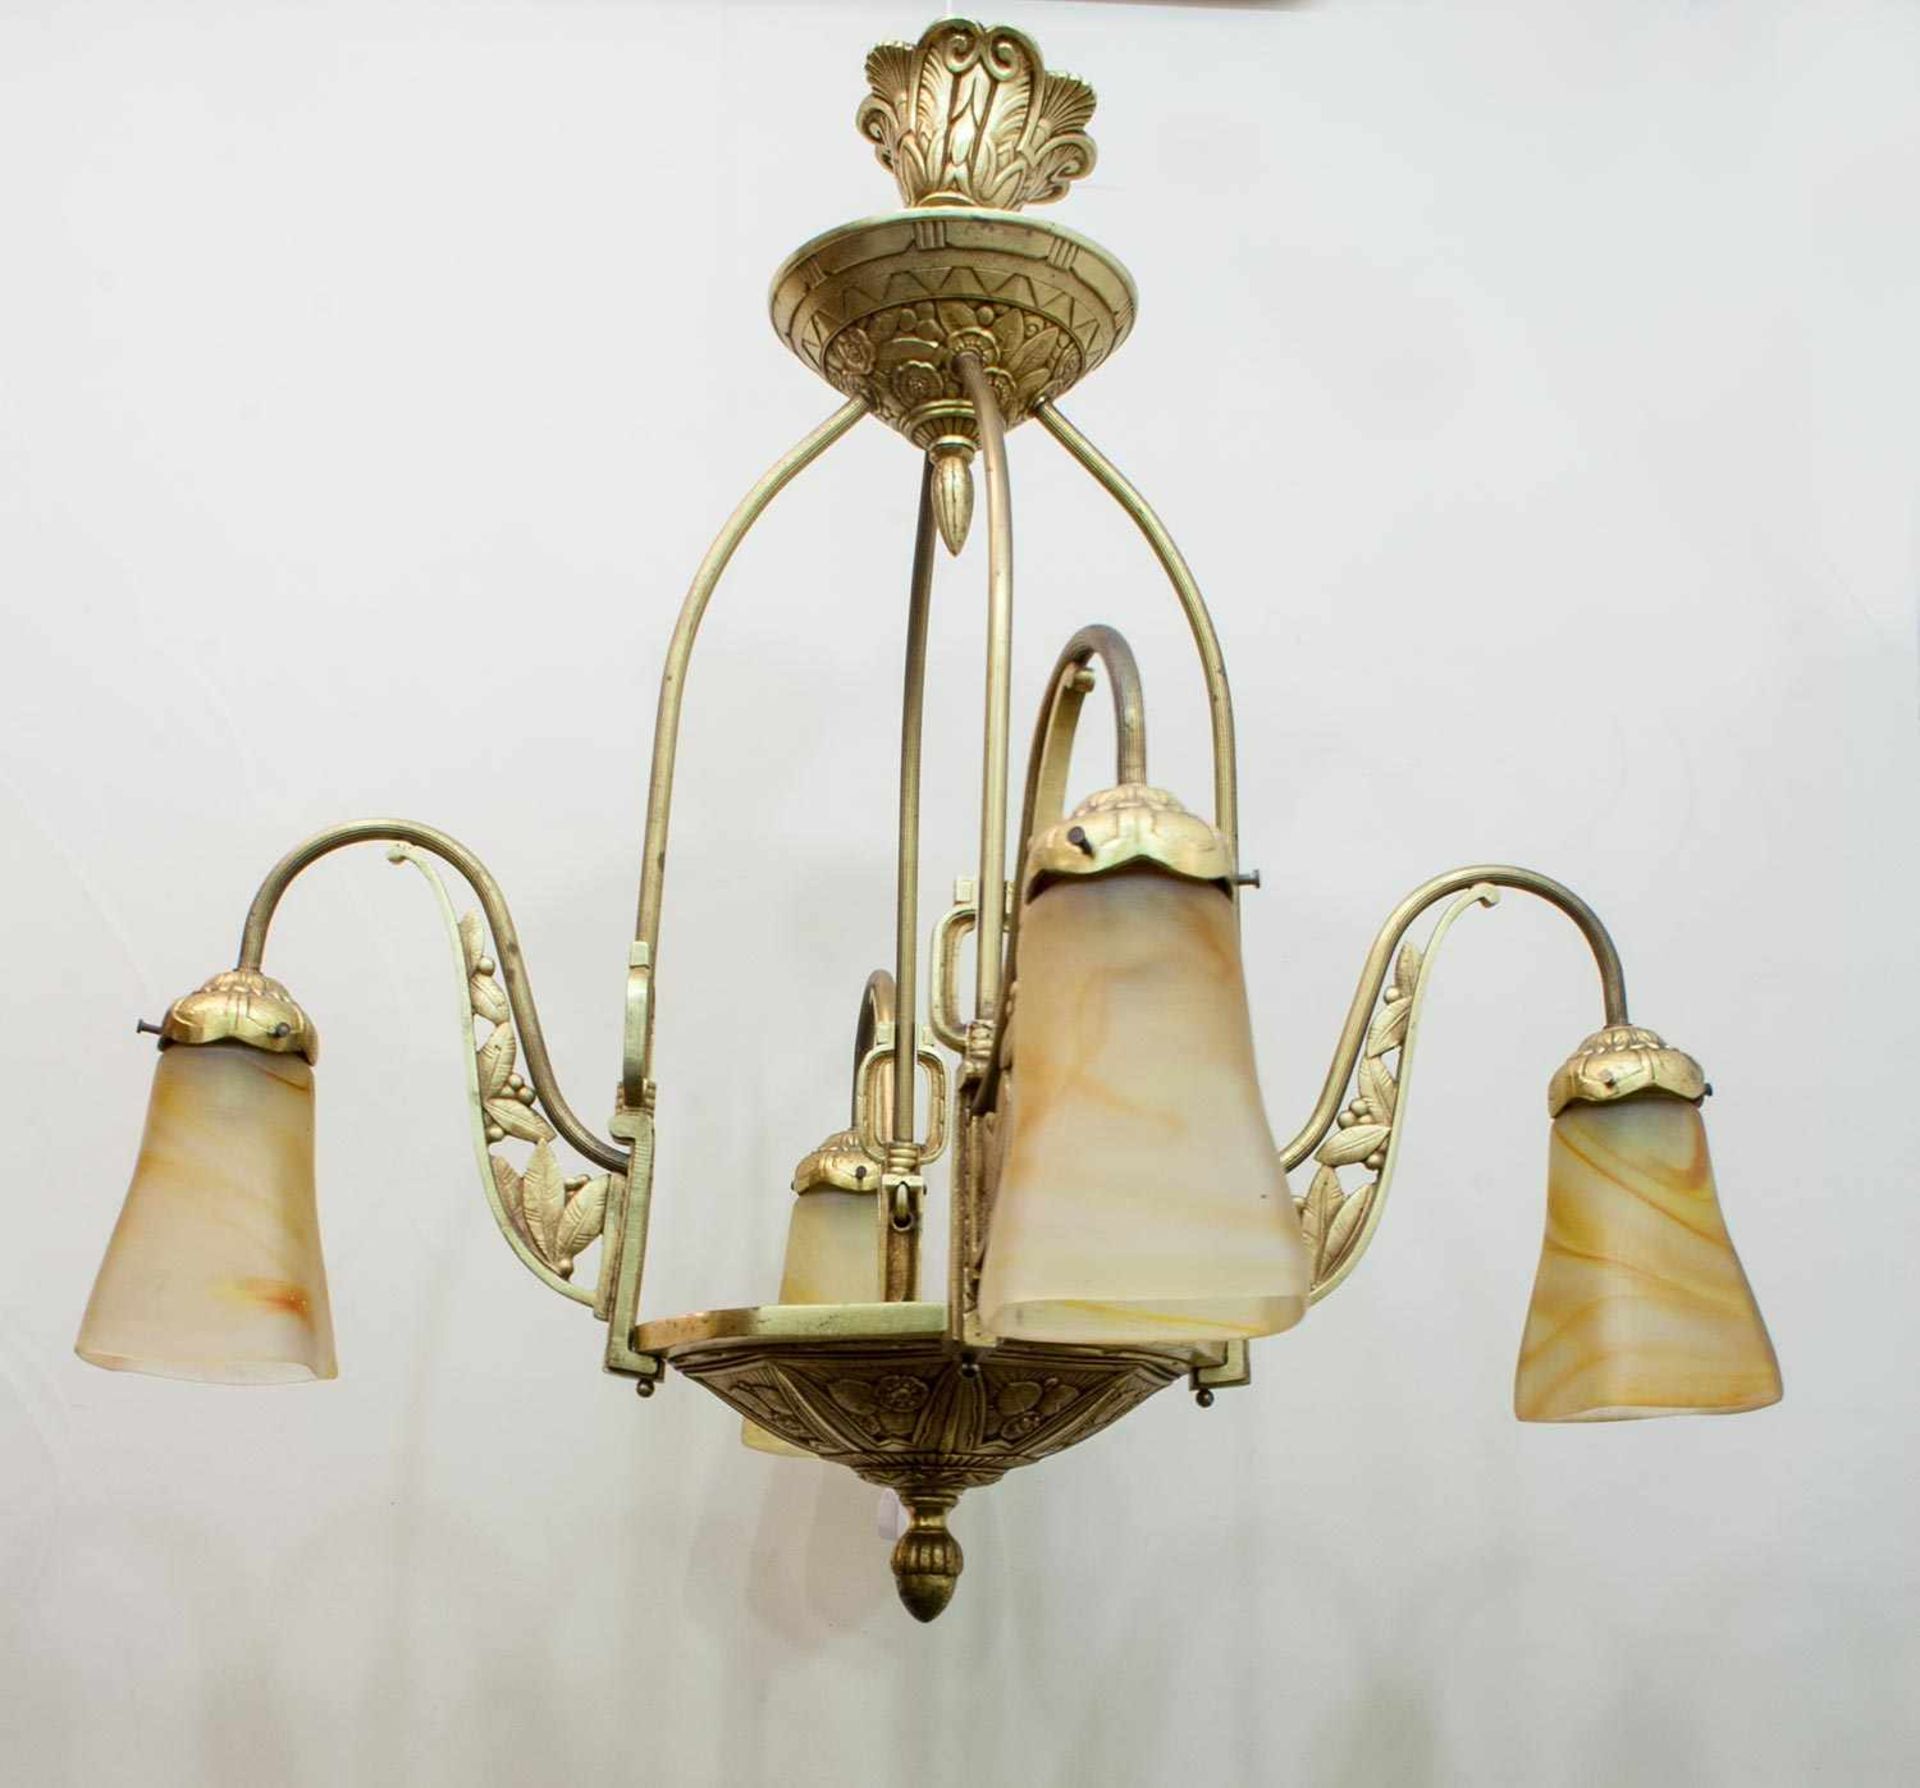 Jugendstil - Deckenlampe Frankreich um 1910, Messing, feuervergoldet, pàtes-de-verre Gläser, - Image 2 of 2